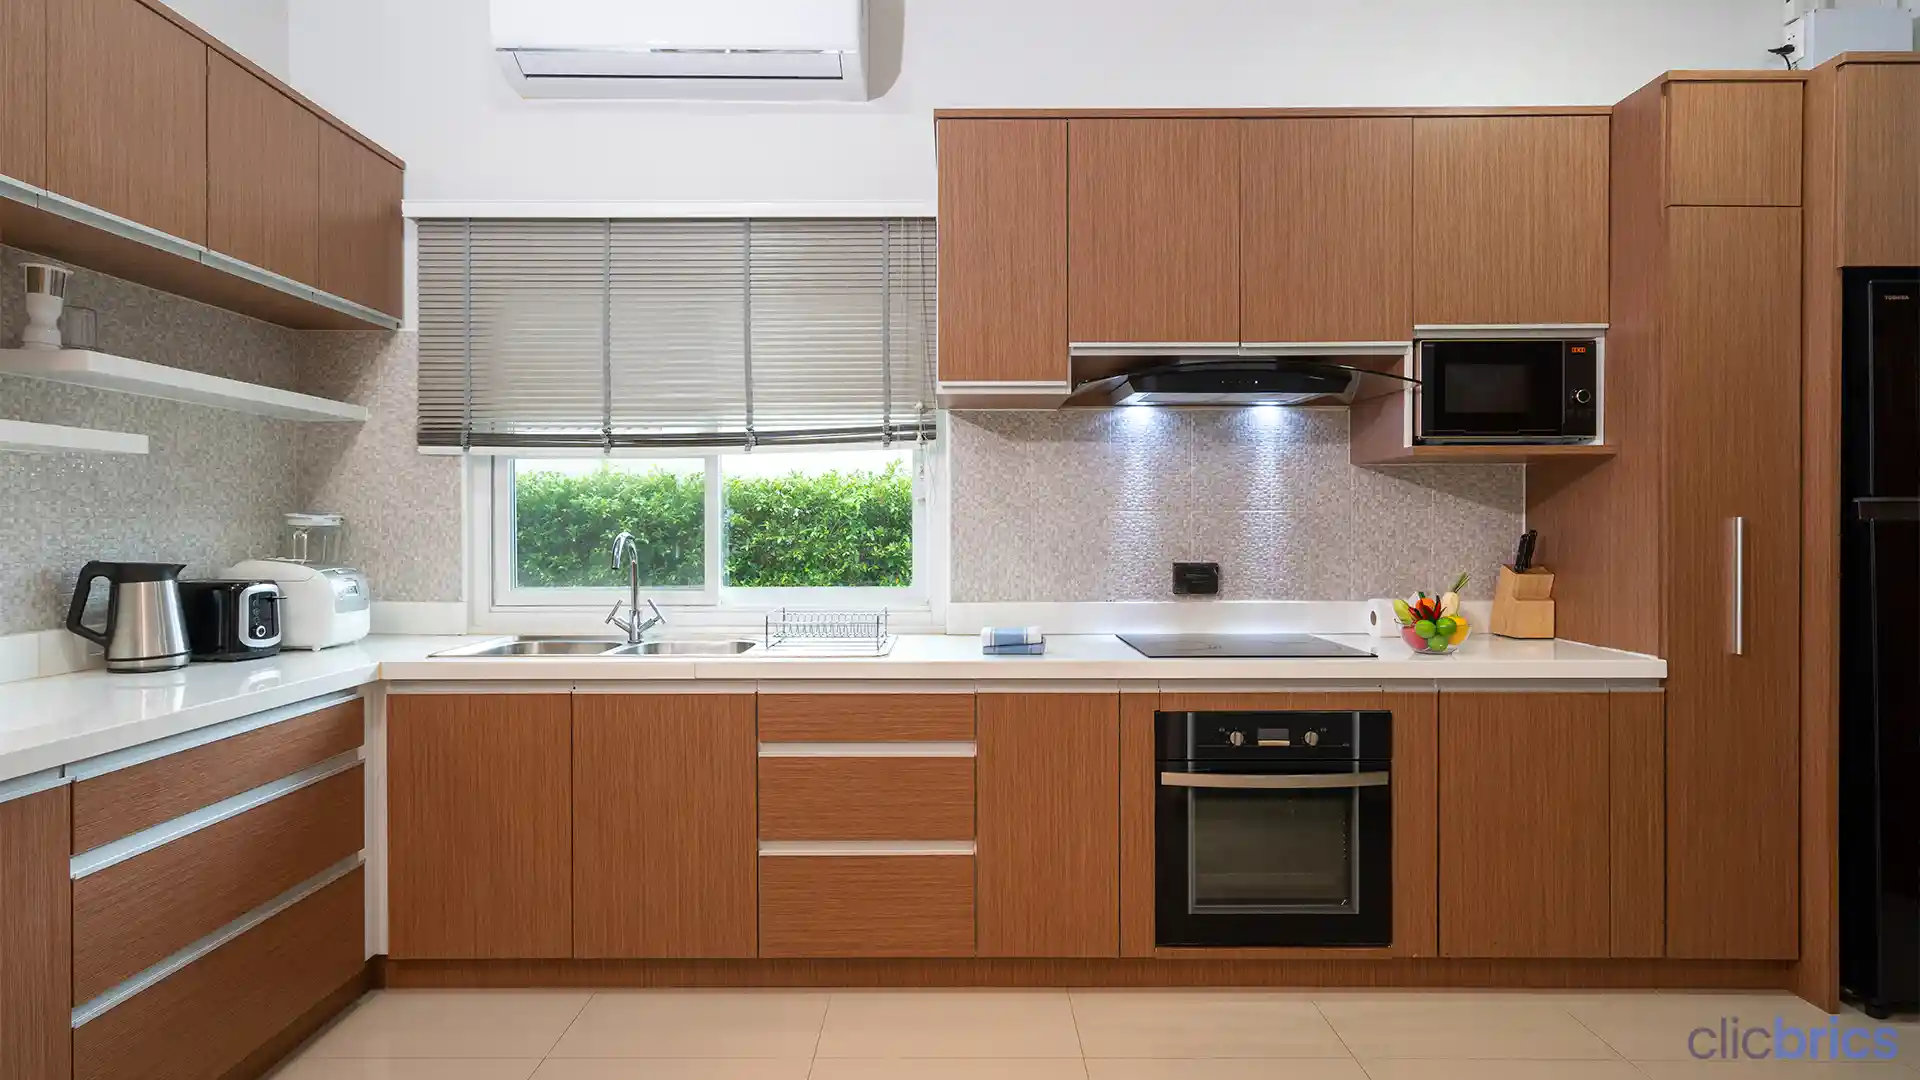 kitchen cabinet design ideas